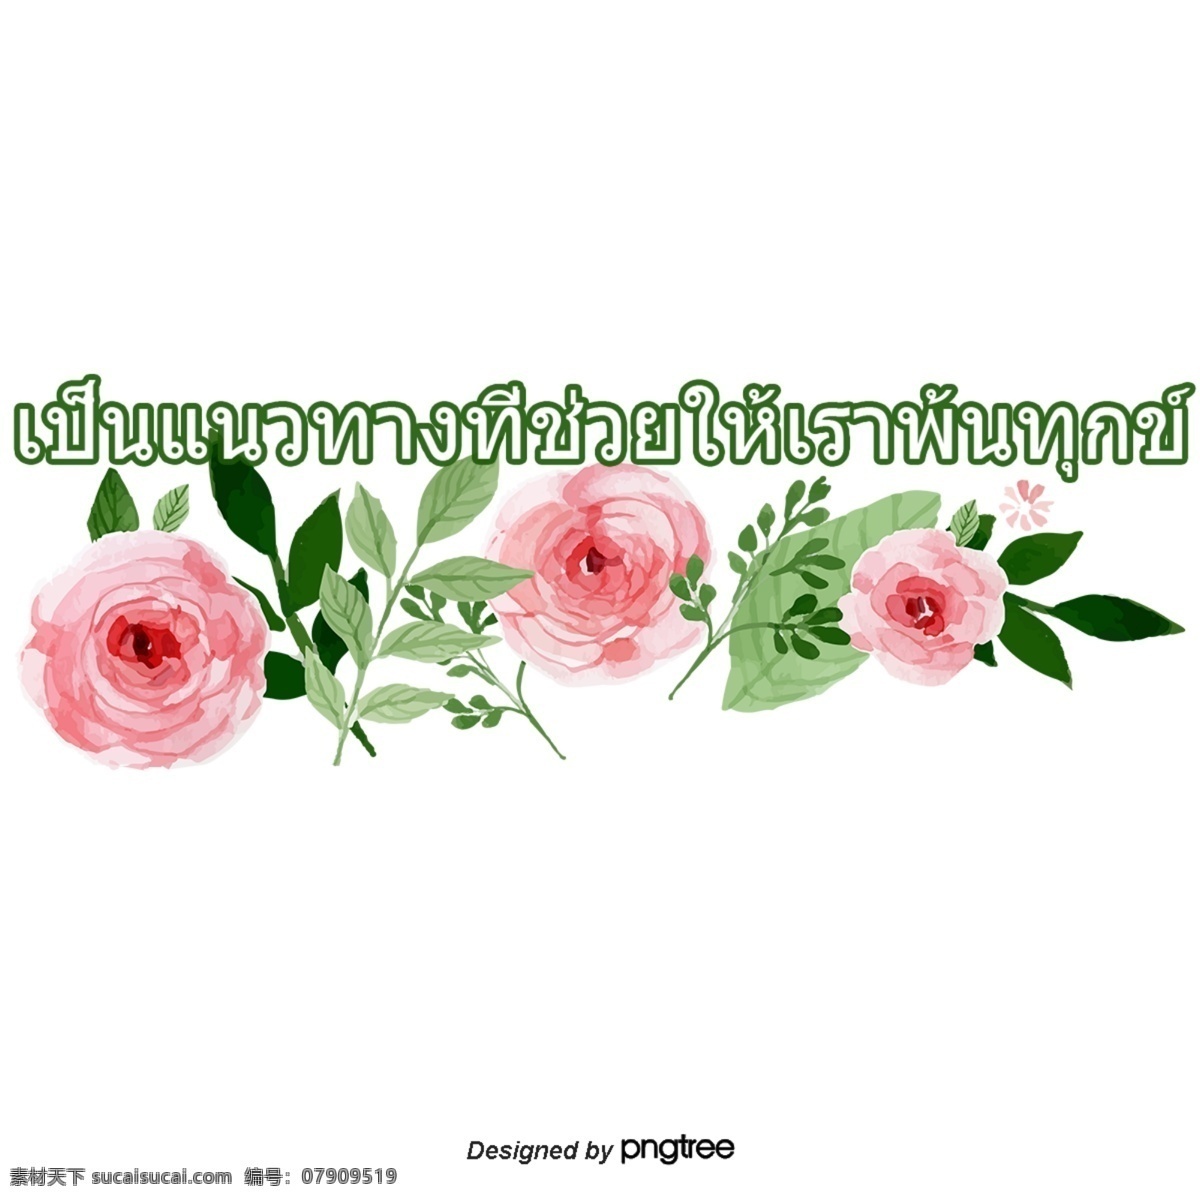 神 教义 准则 帮助 我们 解脱 泰国 字母 红玫瑰